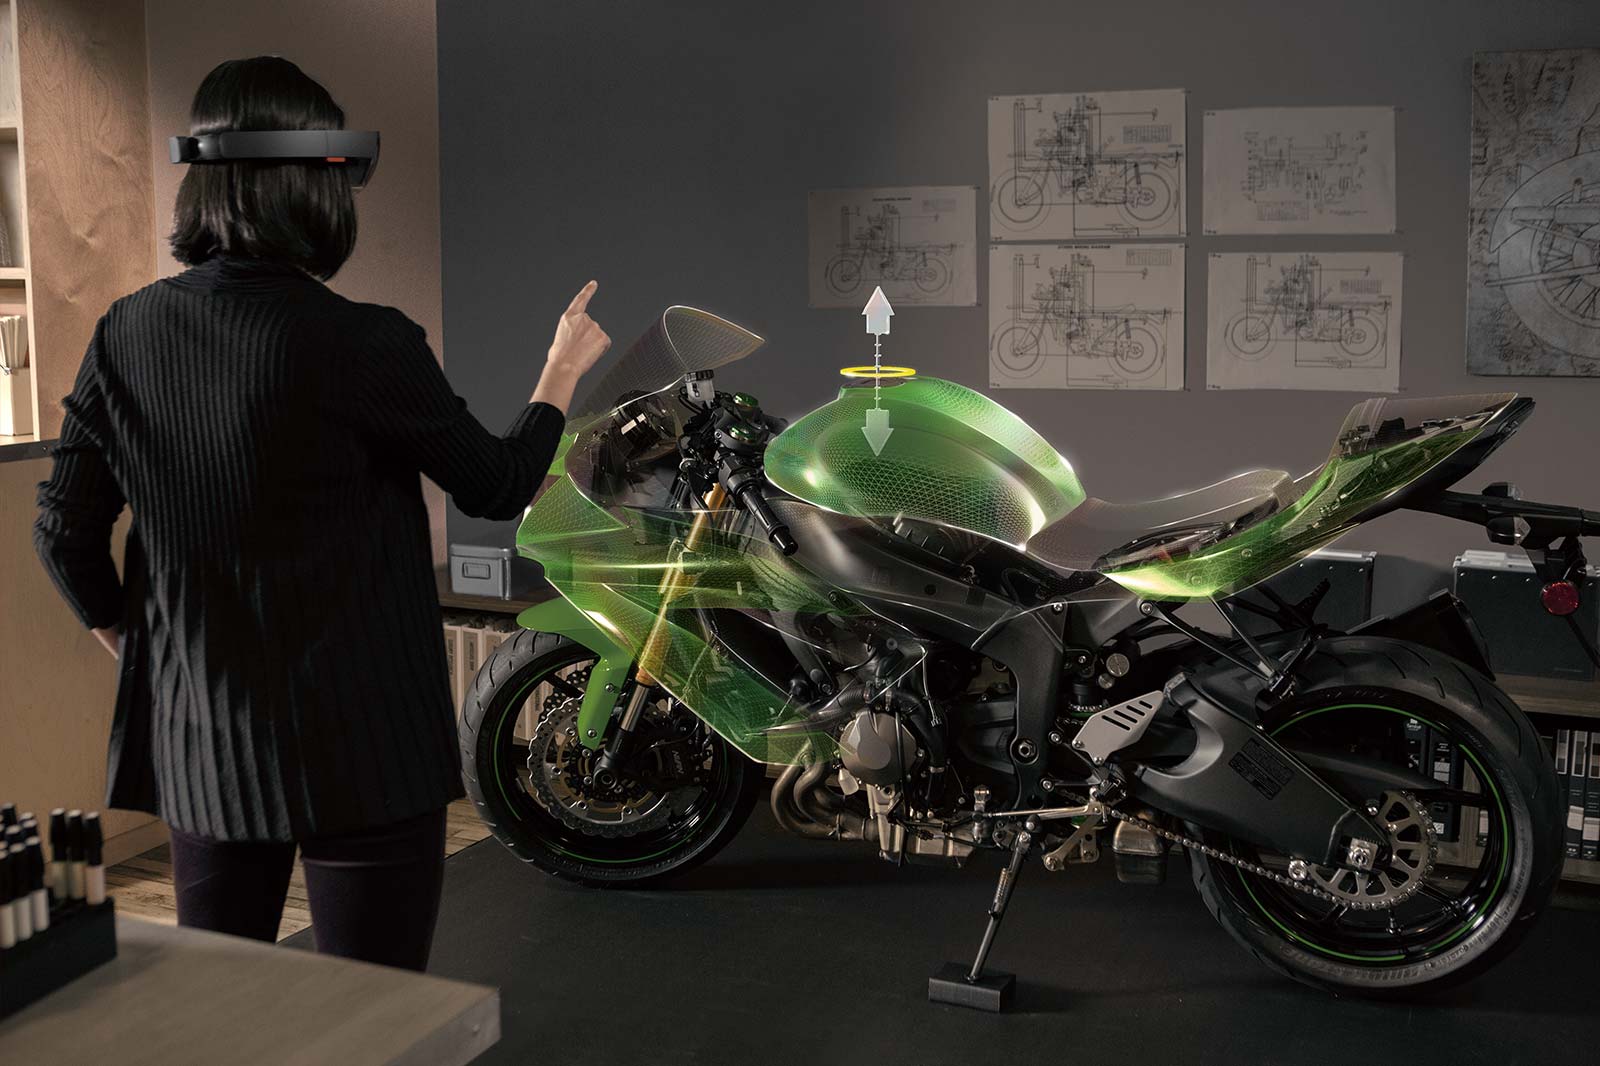 Microsoft HoloLens: Hướng tới tương lai